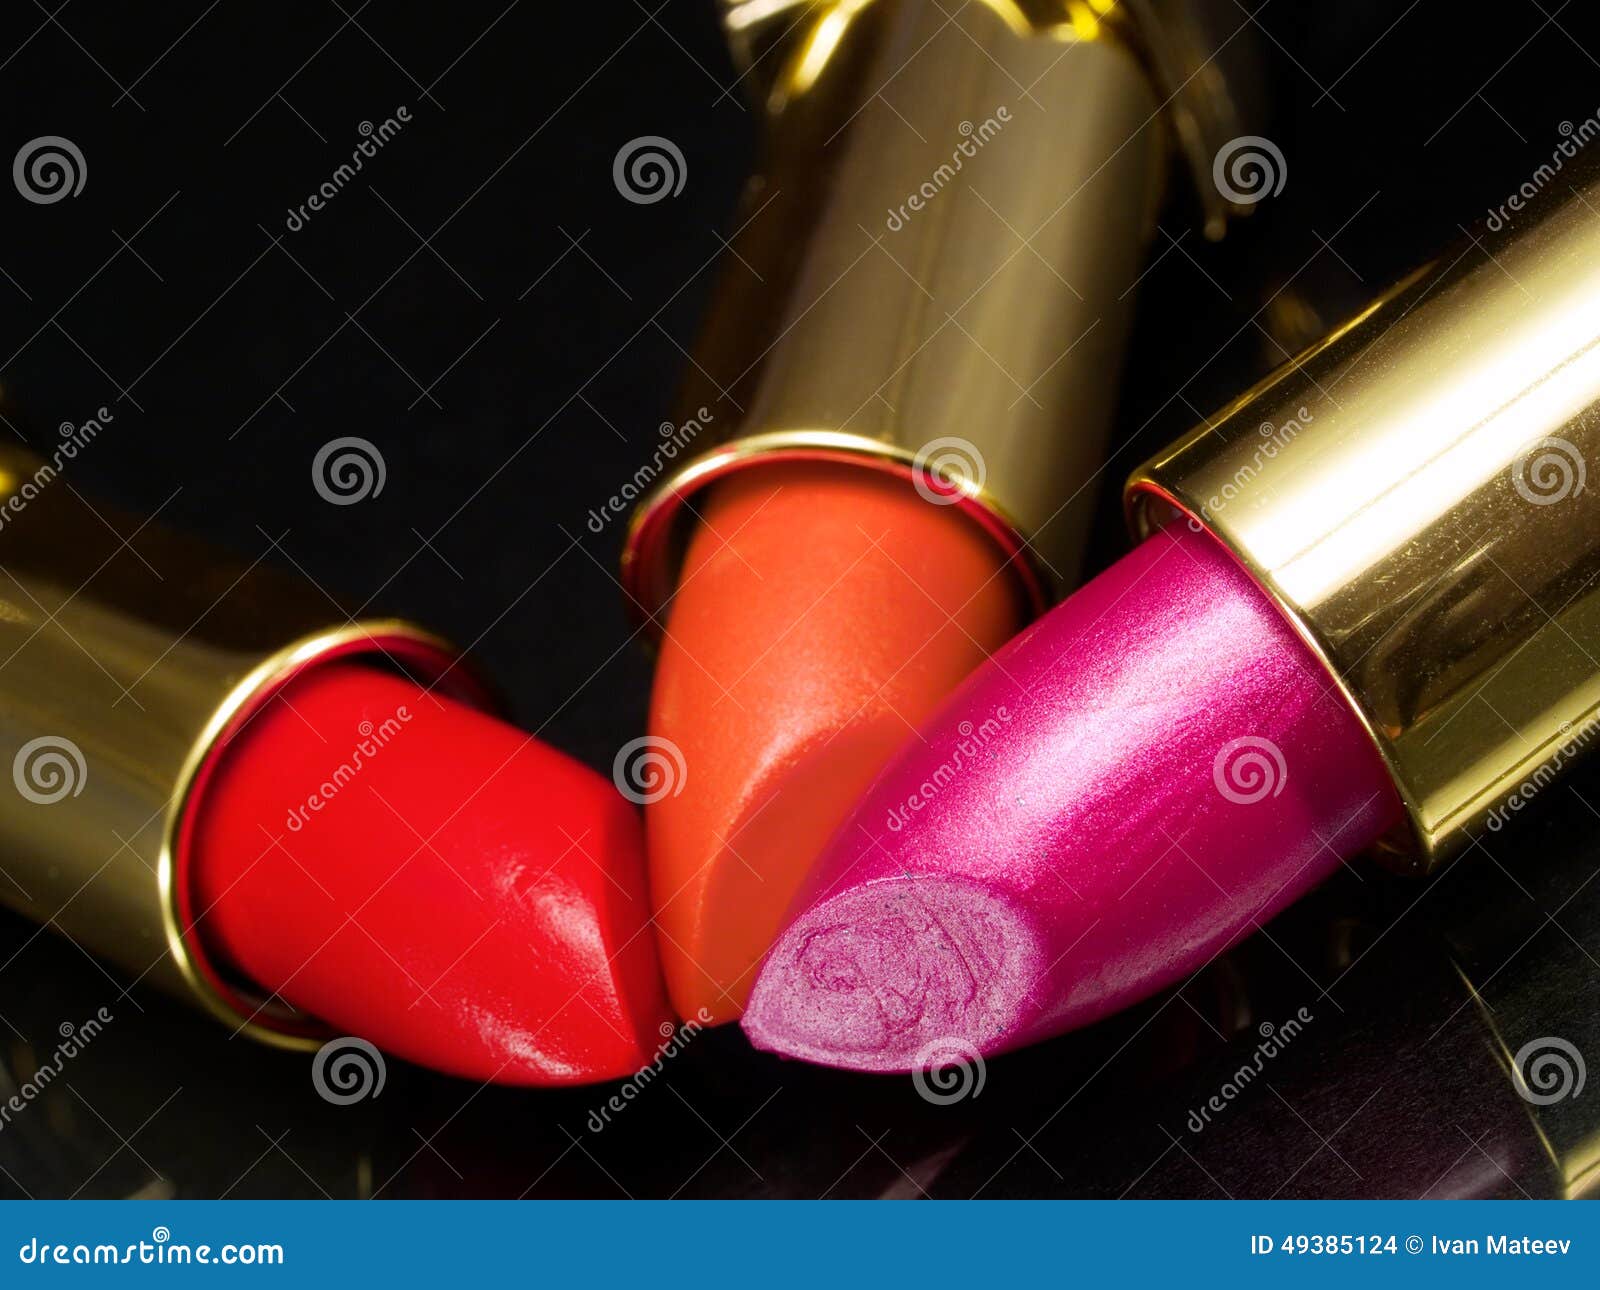 three lipsticks